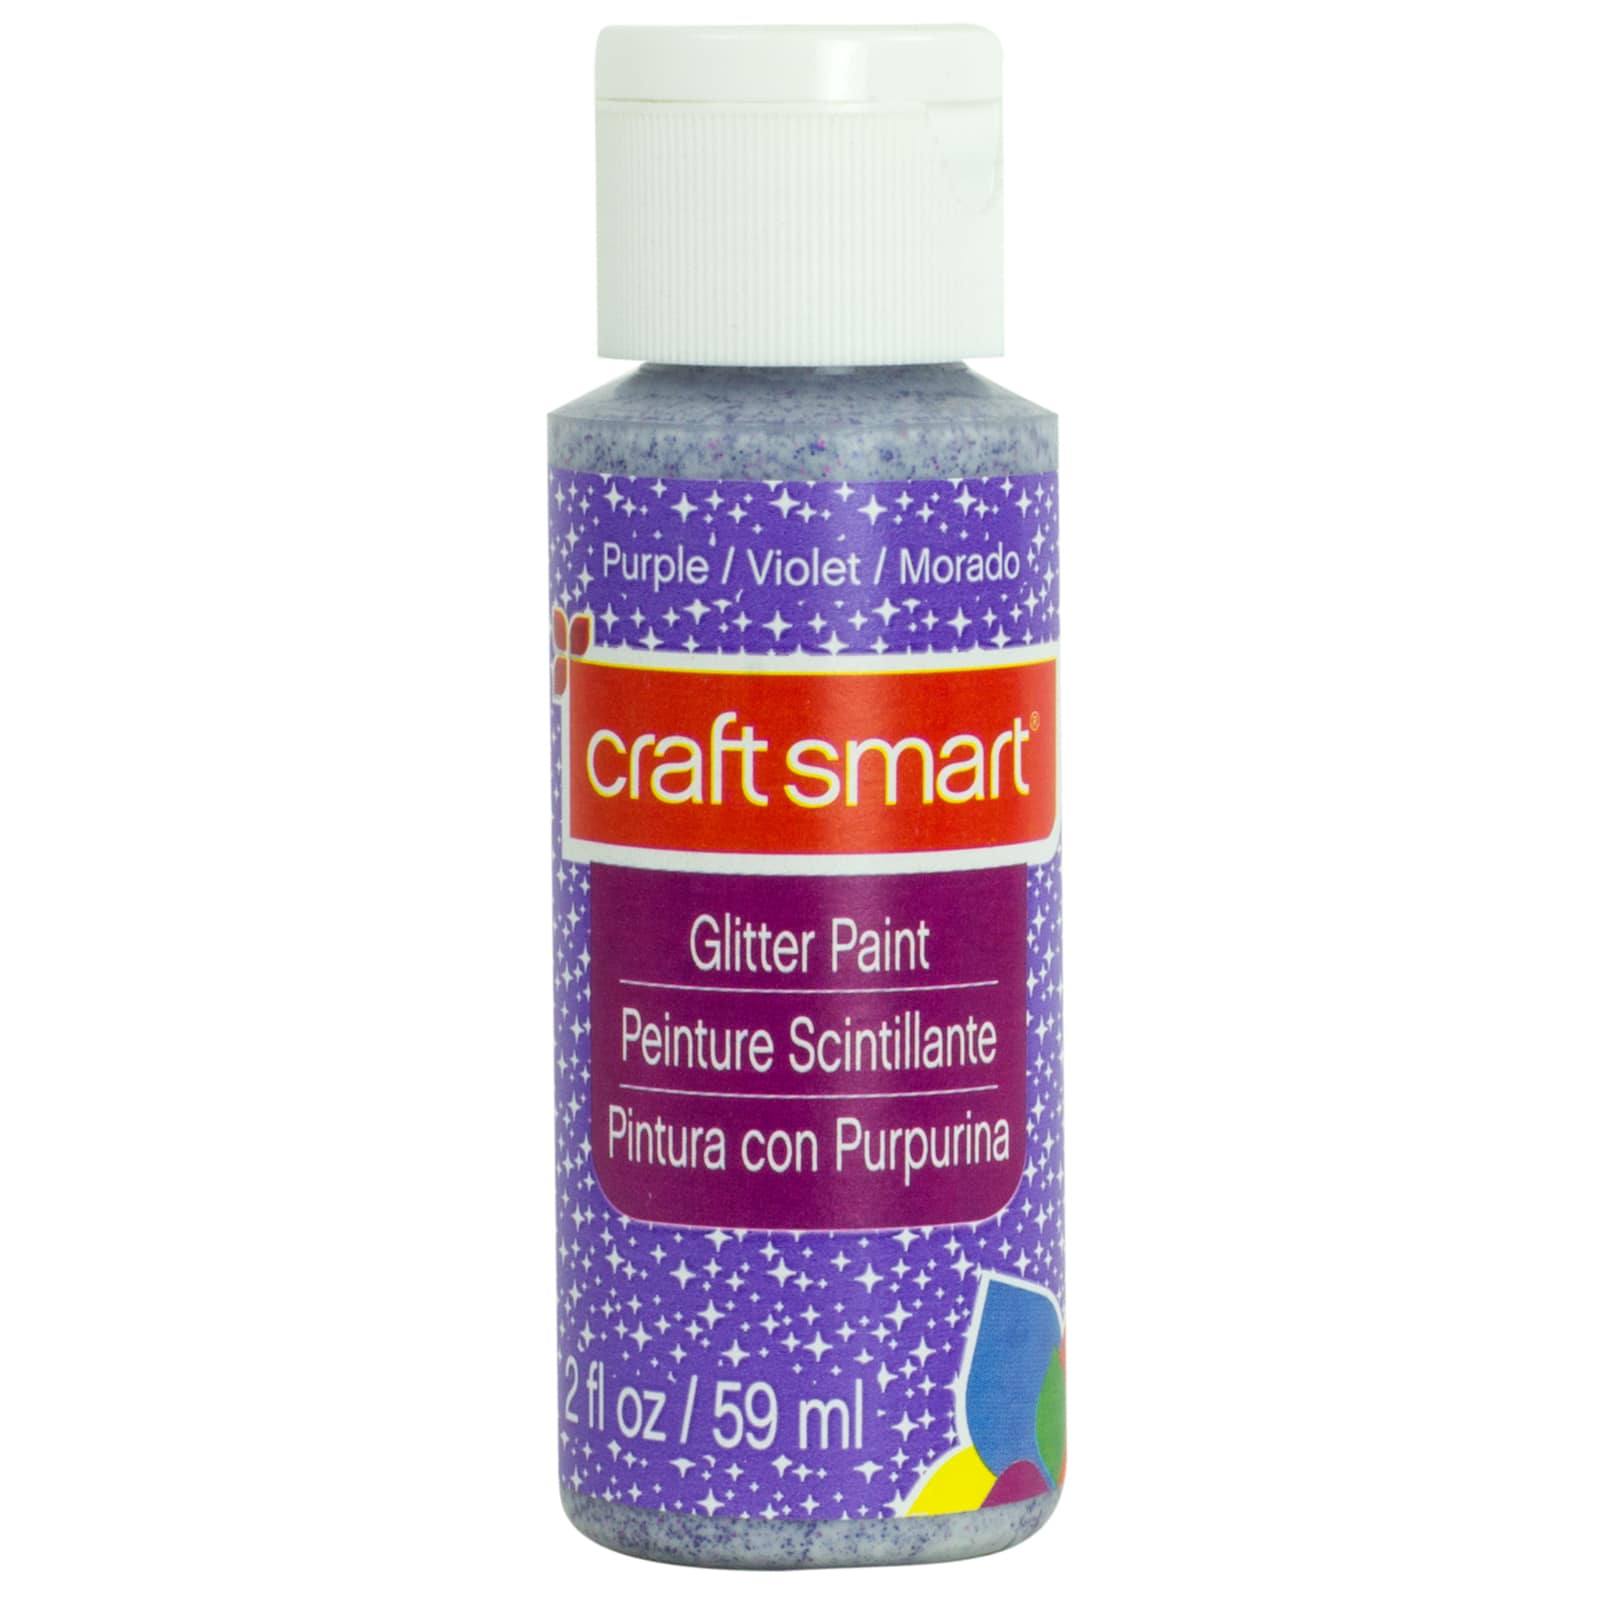 Craft Smart Glitter Paint - 2 fl oz